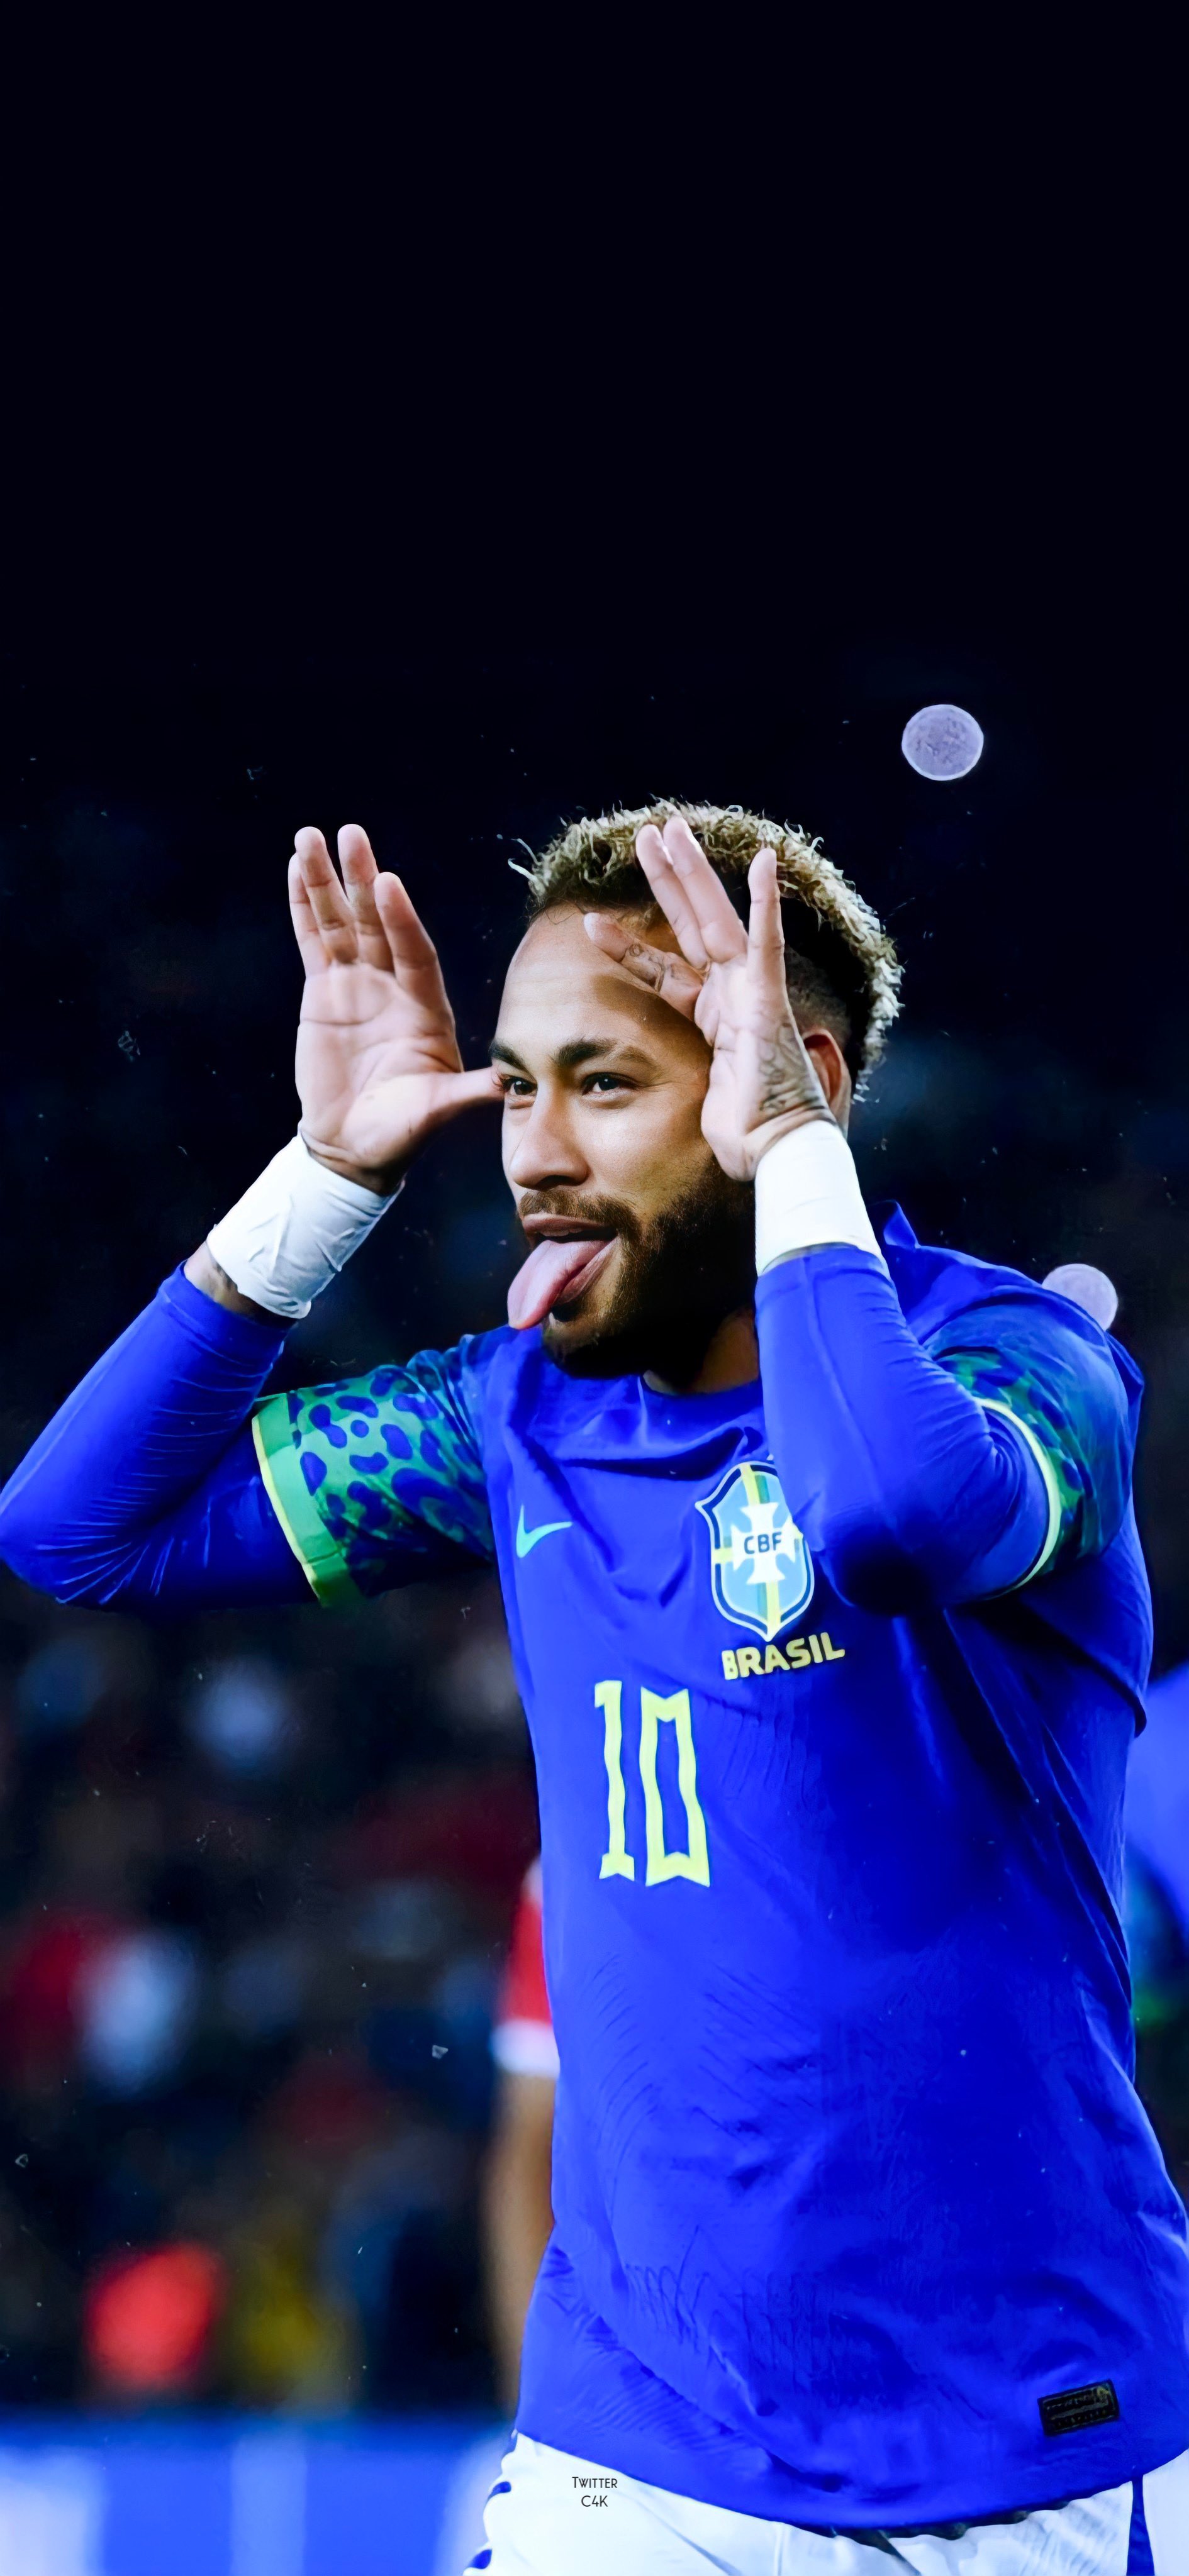 Hình nền Neymar J 2024 sẽ đưa bạn đến với tương lai của Neymar trên sân cỏ. Với sự thăng hoa và điềm đạm trong phong cách chơi bóng đá, Neymar hứa hẹn sẽ trở thành một cầu thủ vĩ đại. Bạn chắc chắn sẽ tìm thấy nhiều niềm vui và cảm hứng từ hình ảnh này.